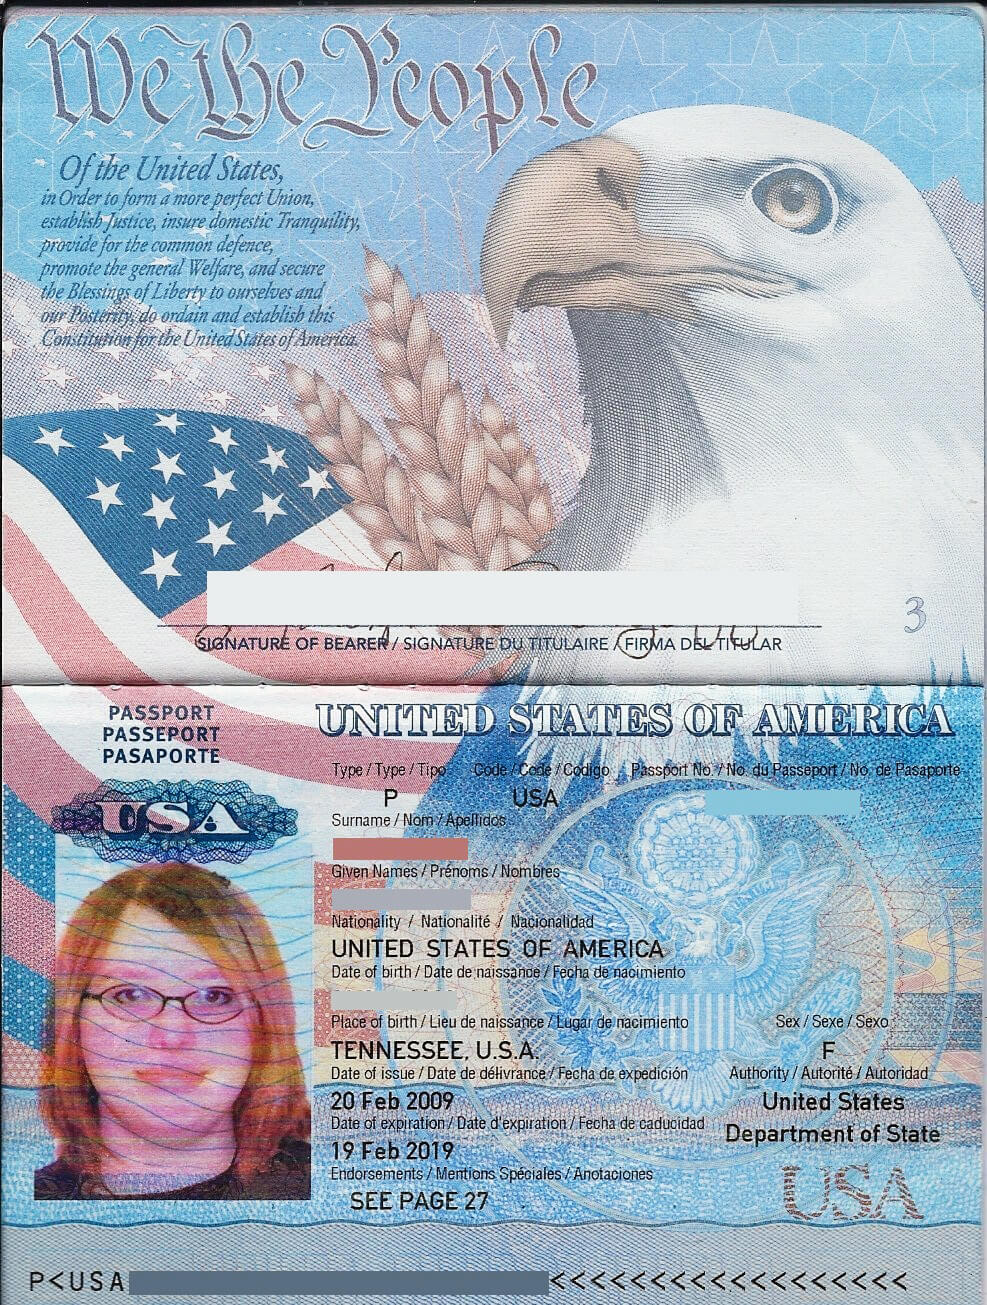 паспорт уганды